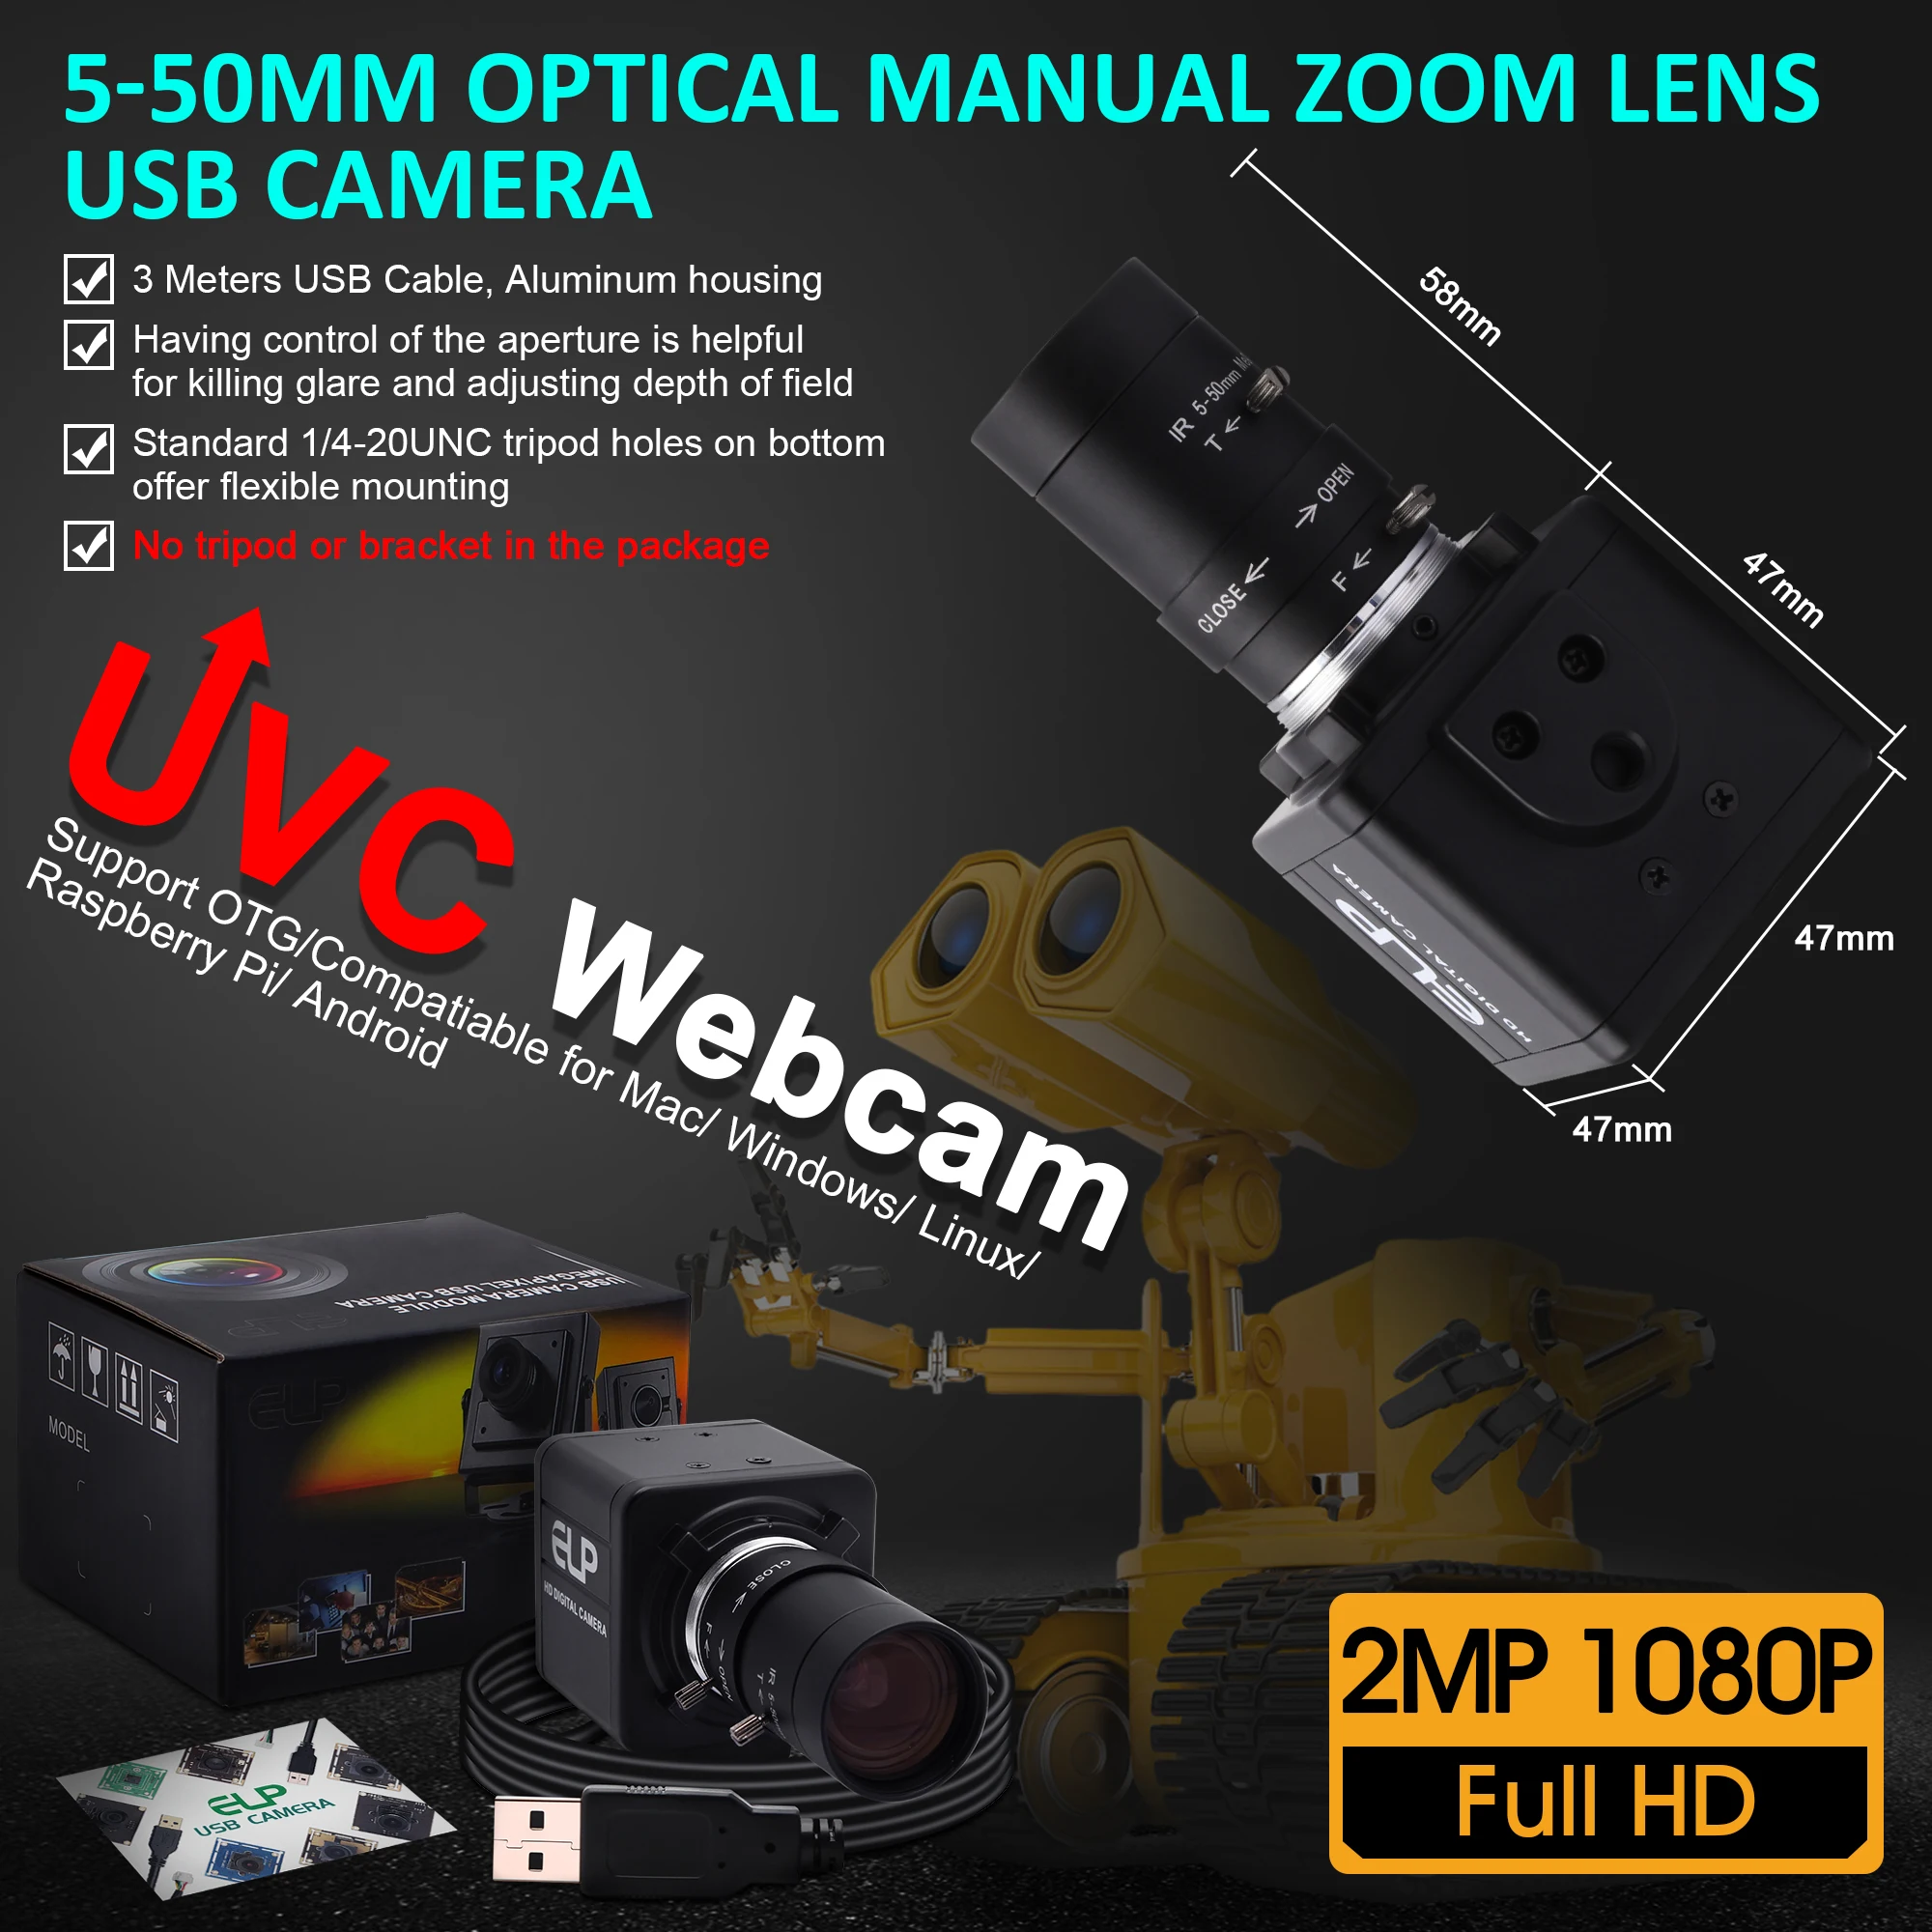 1080P Ipari Webkamera nagysebességű MJPEG 260fps/120fps/60fps OmniVision OV4689 CMOS Video USB Kamera, Varifokális Zoom CS Lencse4